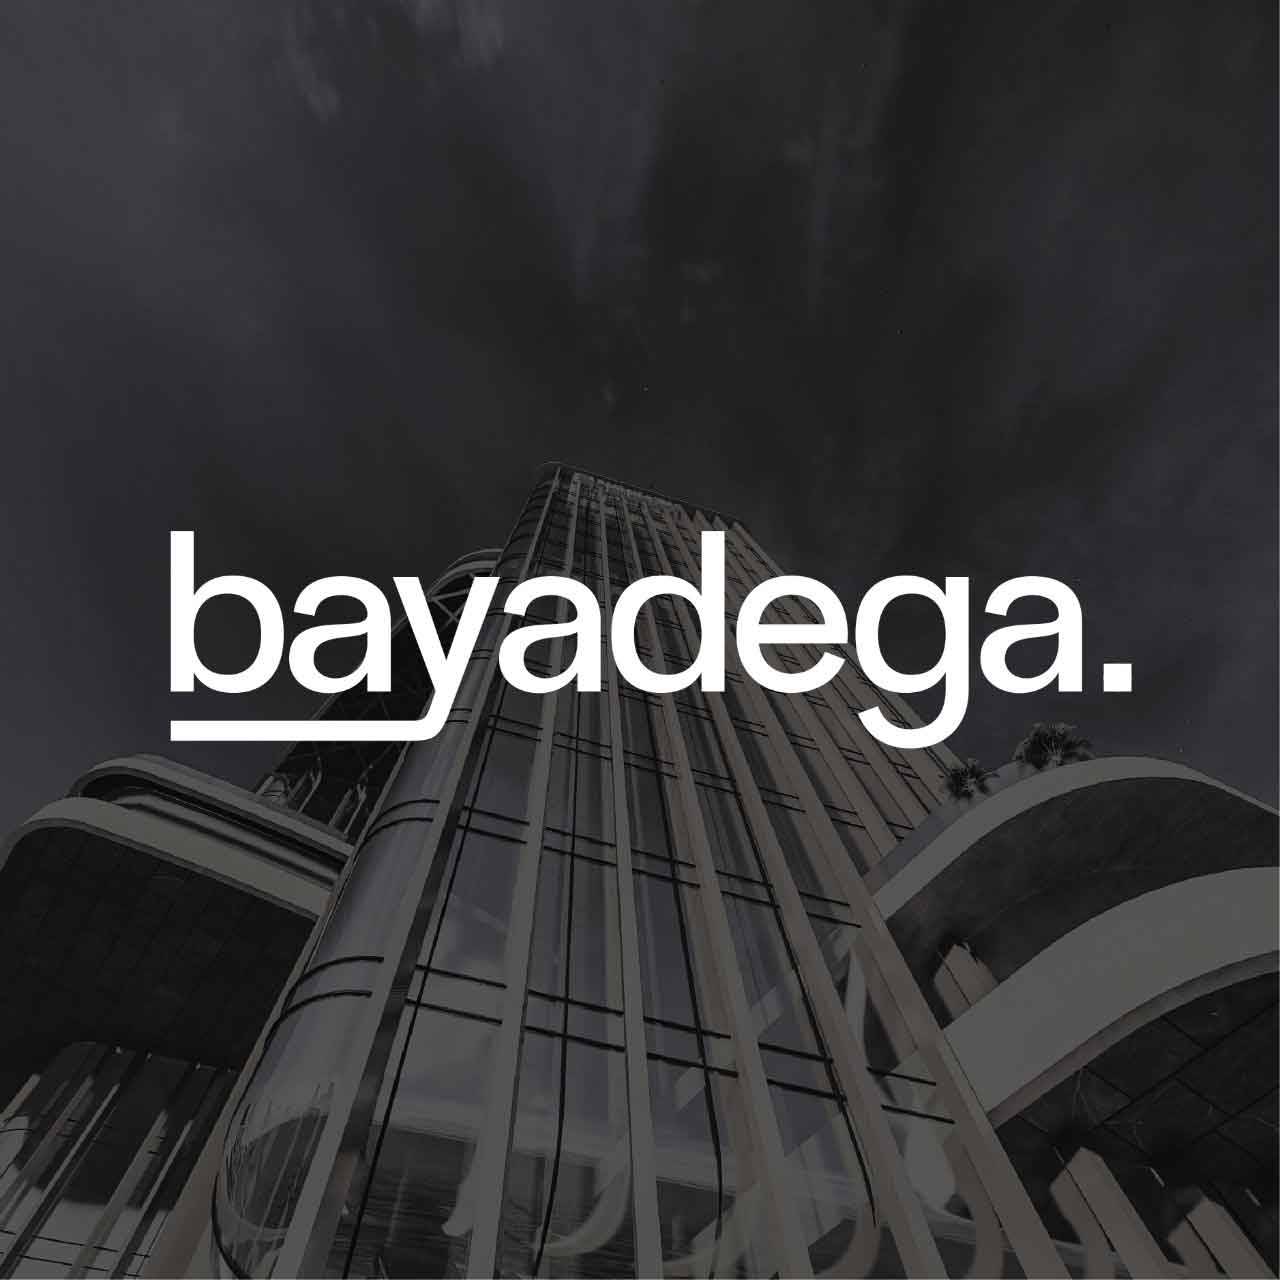 ابراج باياديجا العاصمة الادارية الجديدة Bayadega new capital - Bayadega Tower new capital